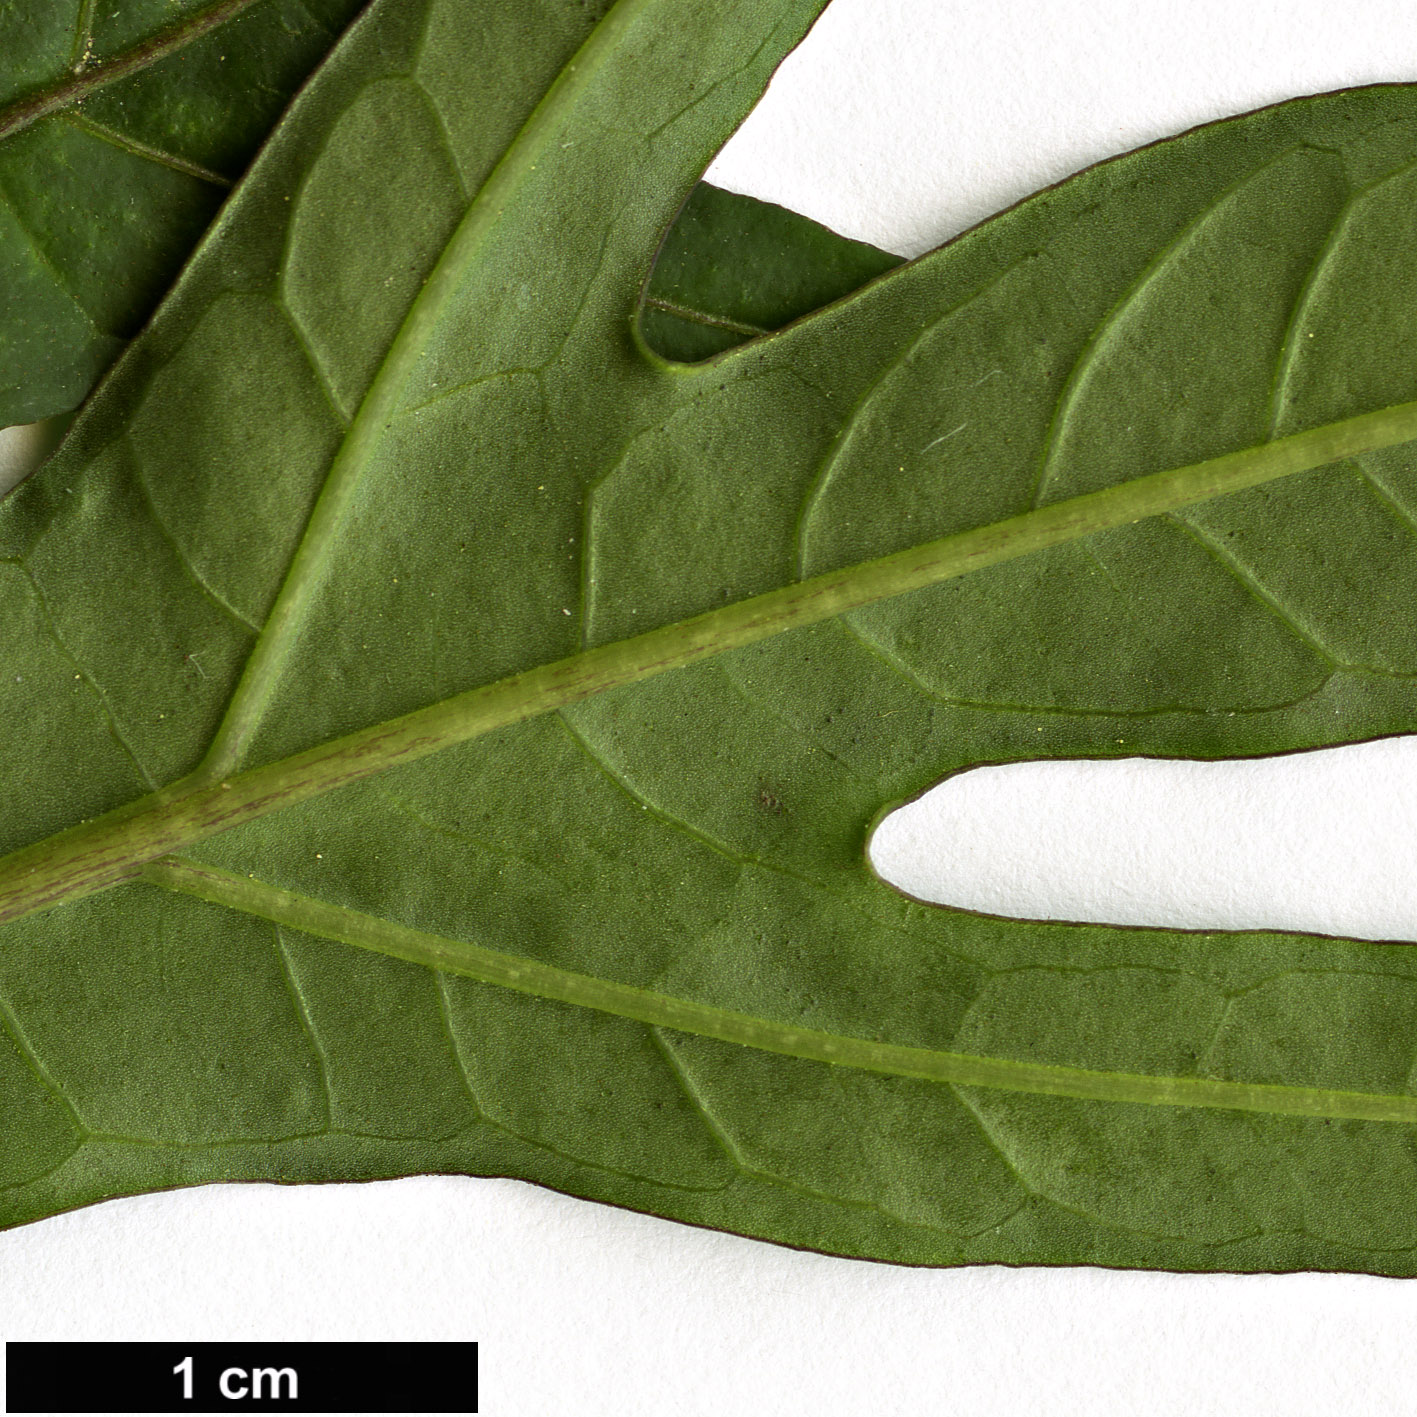 High resolution image: Family: Solanaceae - Genus: Solanum - Taxon: laciniatum